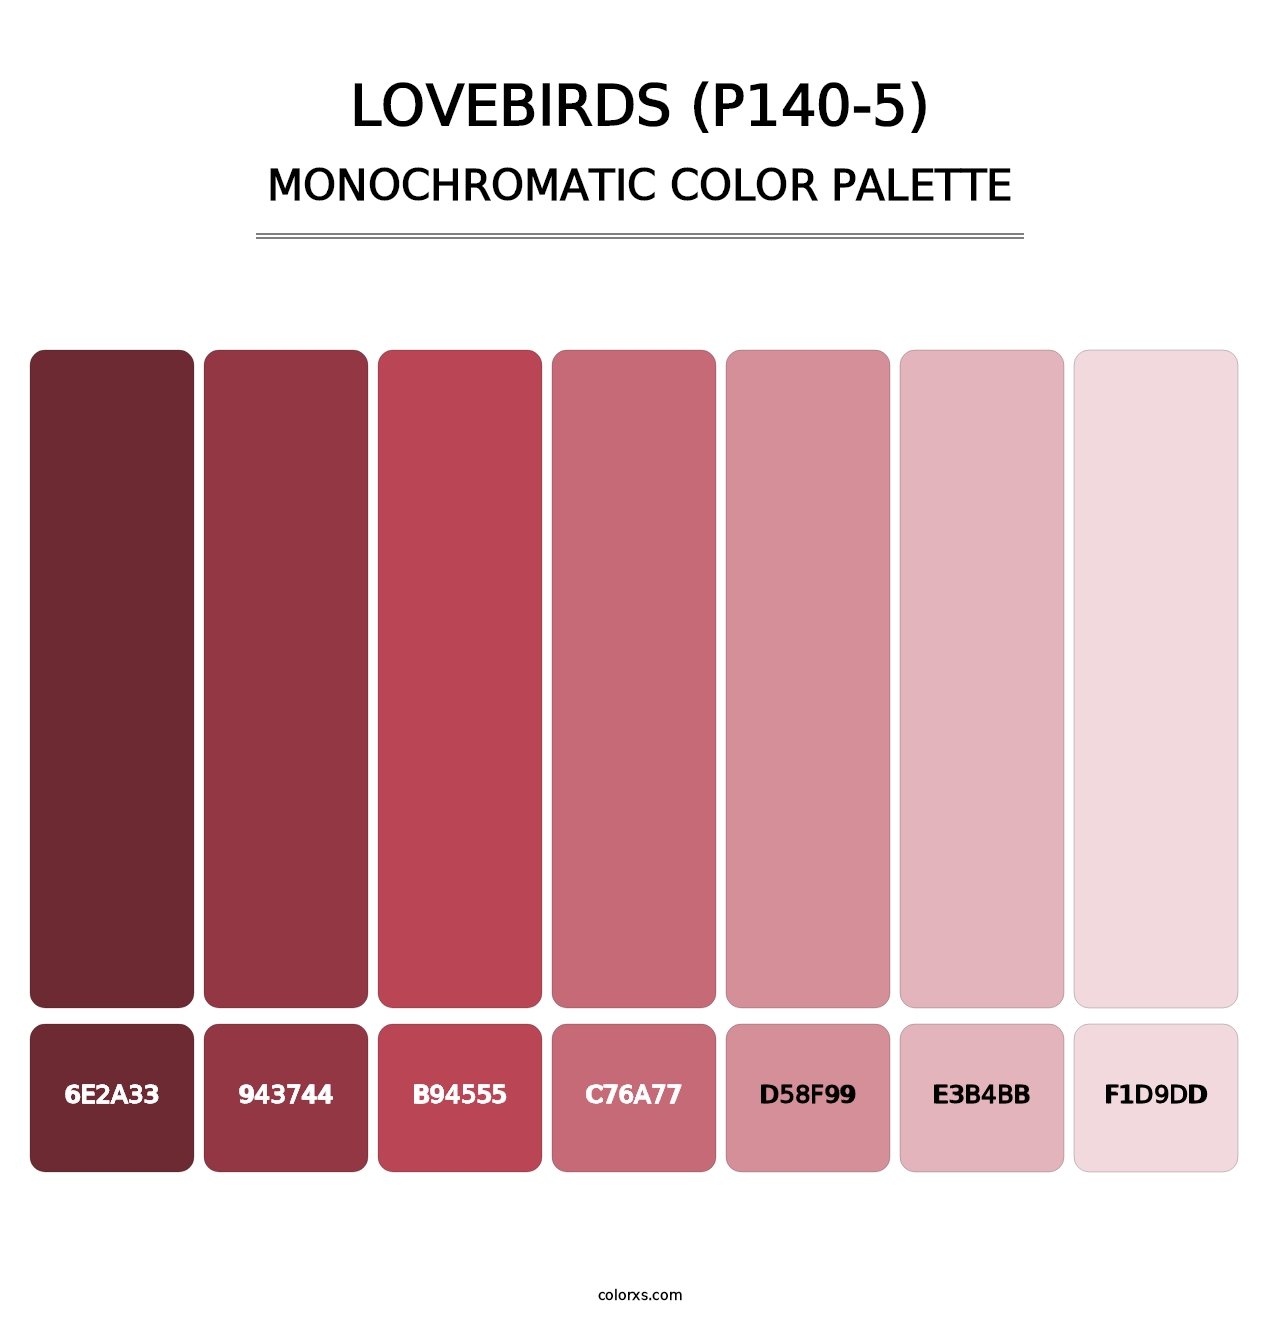 Lovebirds (P140-5) - Monochromatic Color Palette